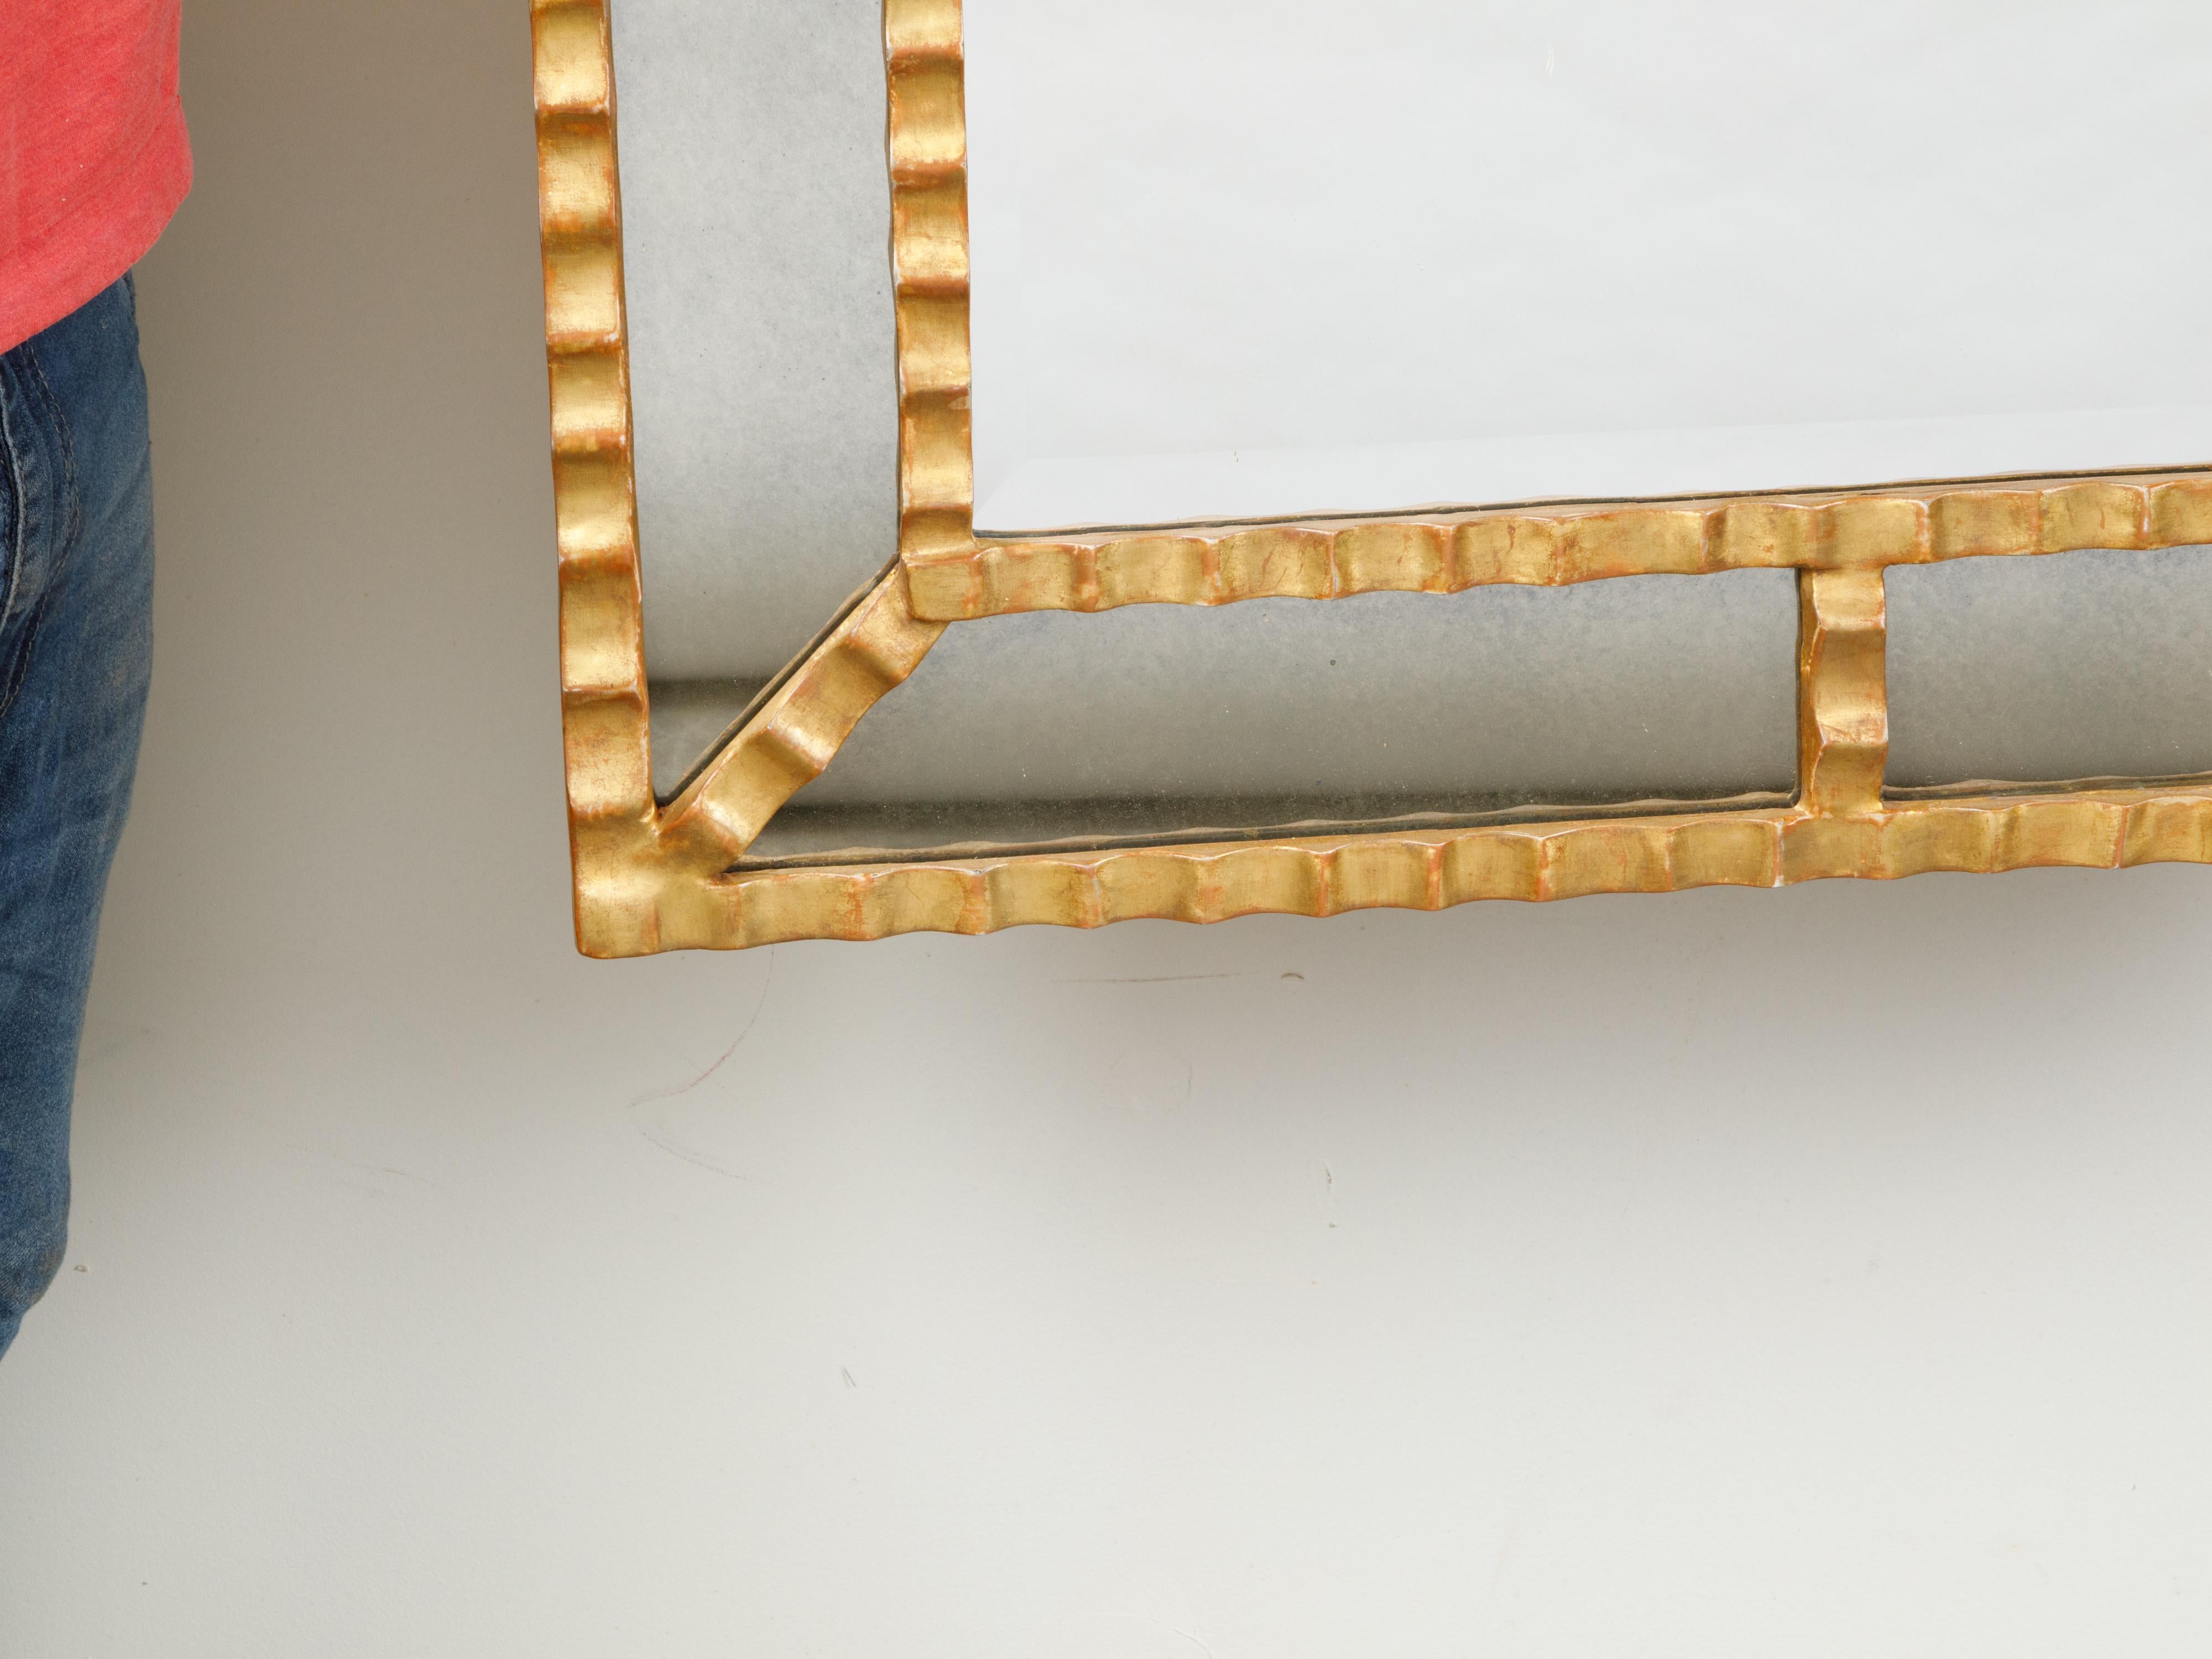 Ein italienischer, vergoldeter Metallspiegel aus der Mitte des 20. Jahrhunderts, mit gerillten Motiven. Wir haben derzeit zwei Spiegel zur Verfügung, preislich und verkauft $ 5.400 pro Stück. Dieser vergoldete Spiegel aus Metall, der in der Mitte